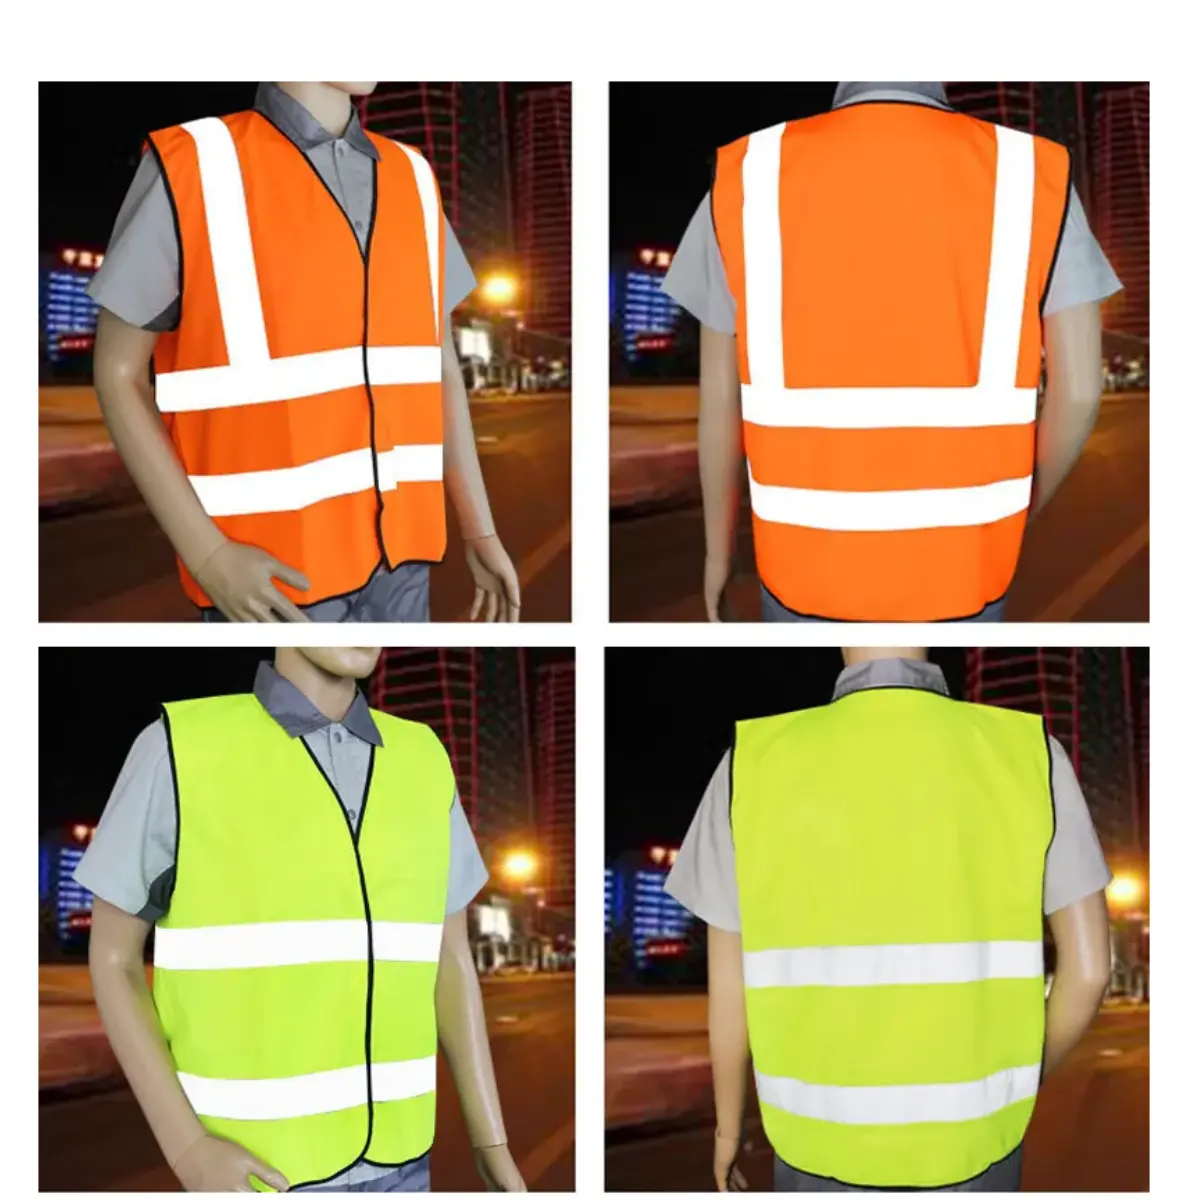 PA0812 Vestuário De Segurança Oi Vis Aviso Vest Colete De Segurança Reflexivo De Alta Visibilidade Vest CE EN20471 Classe 2